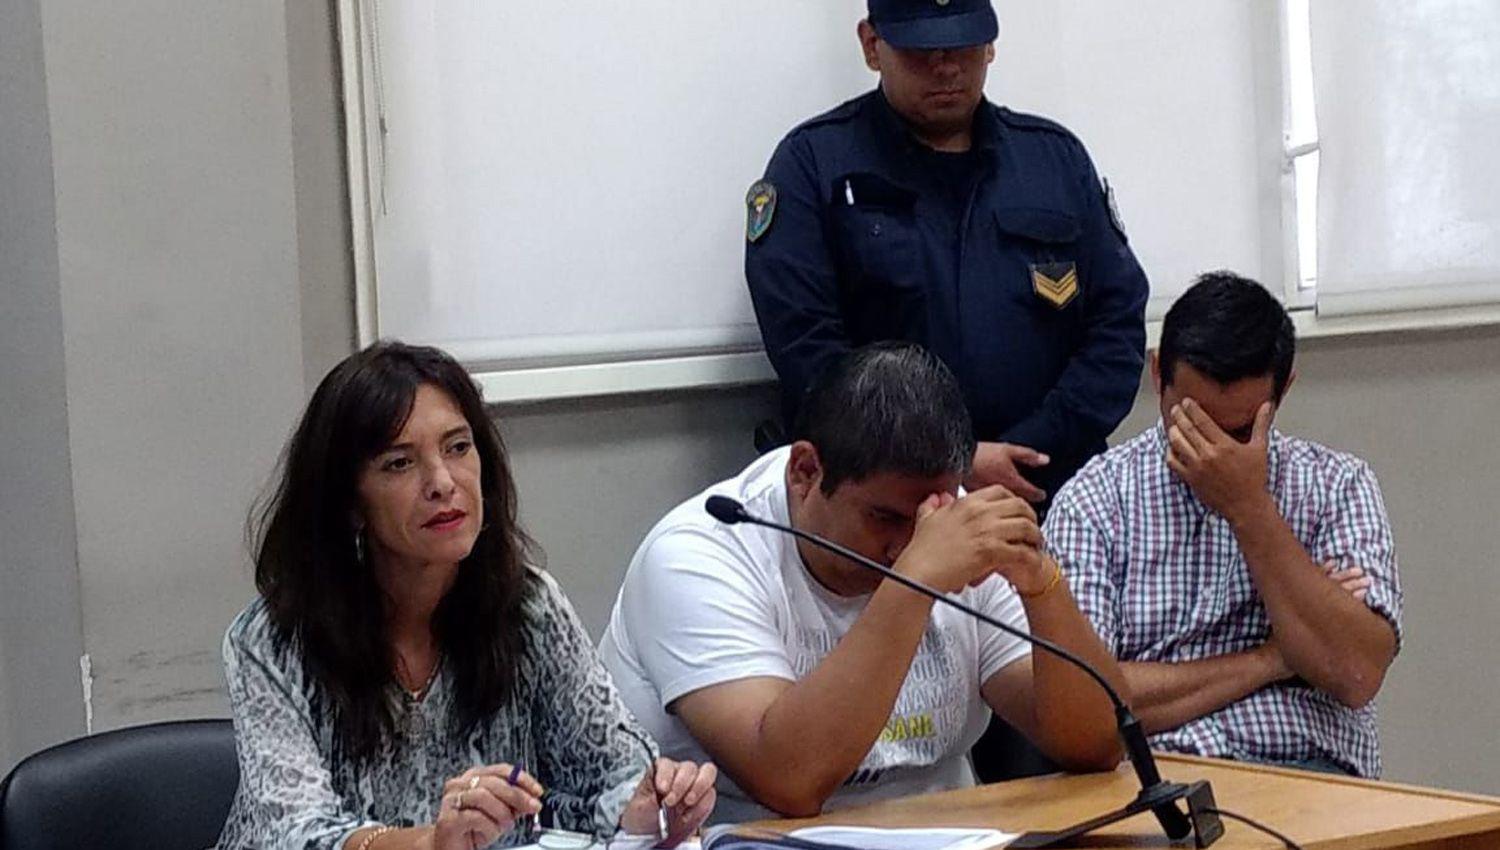 AUDIENCIA Guillermo Orellana y Héctor Coronel recuperaron la libertad antes del mediodía pero siguen ligados al proceso
